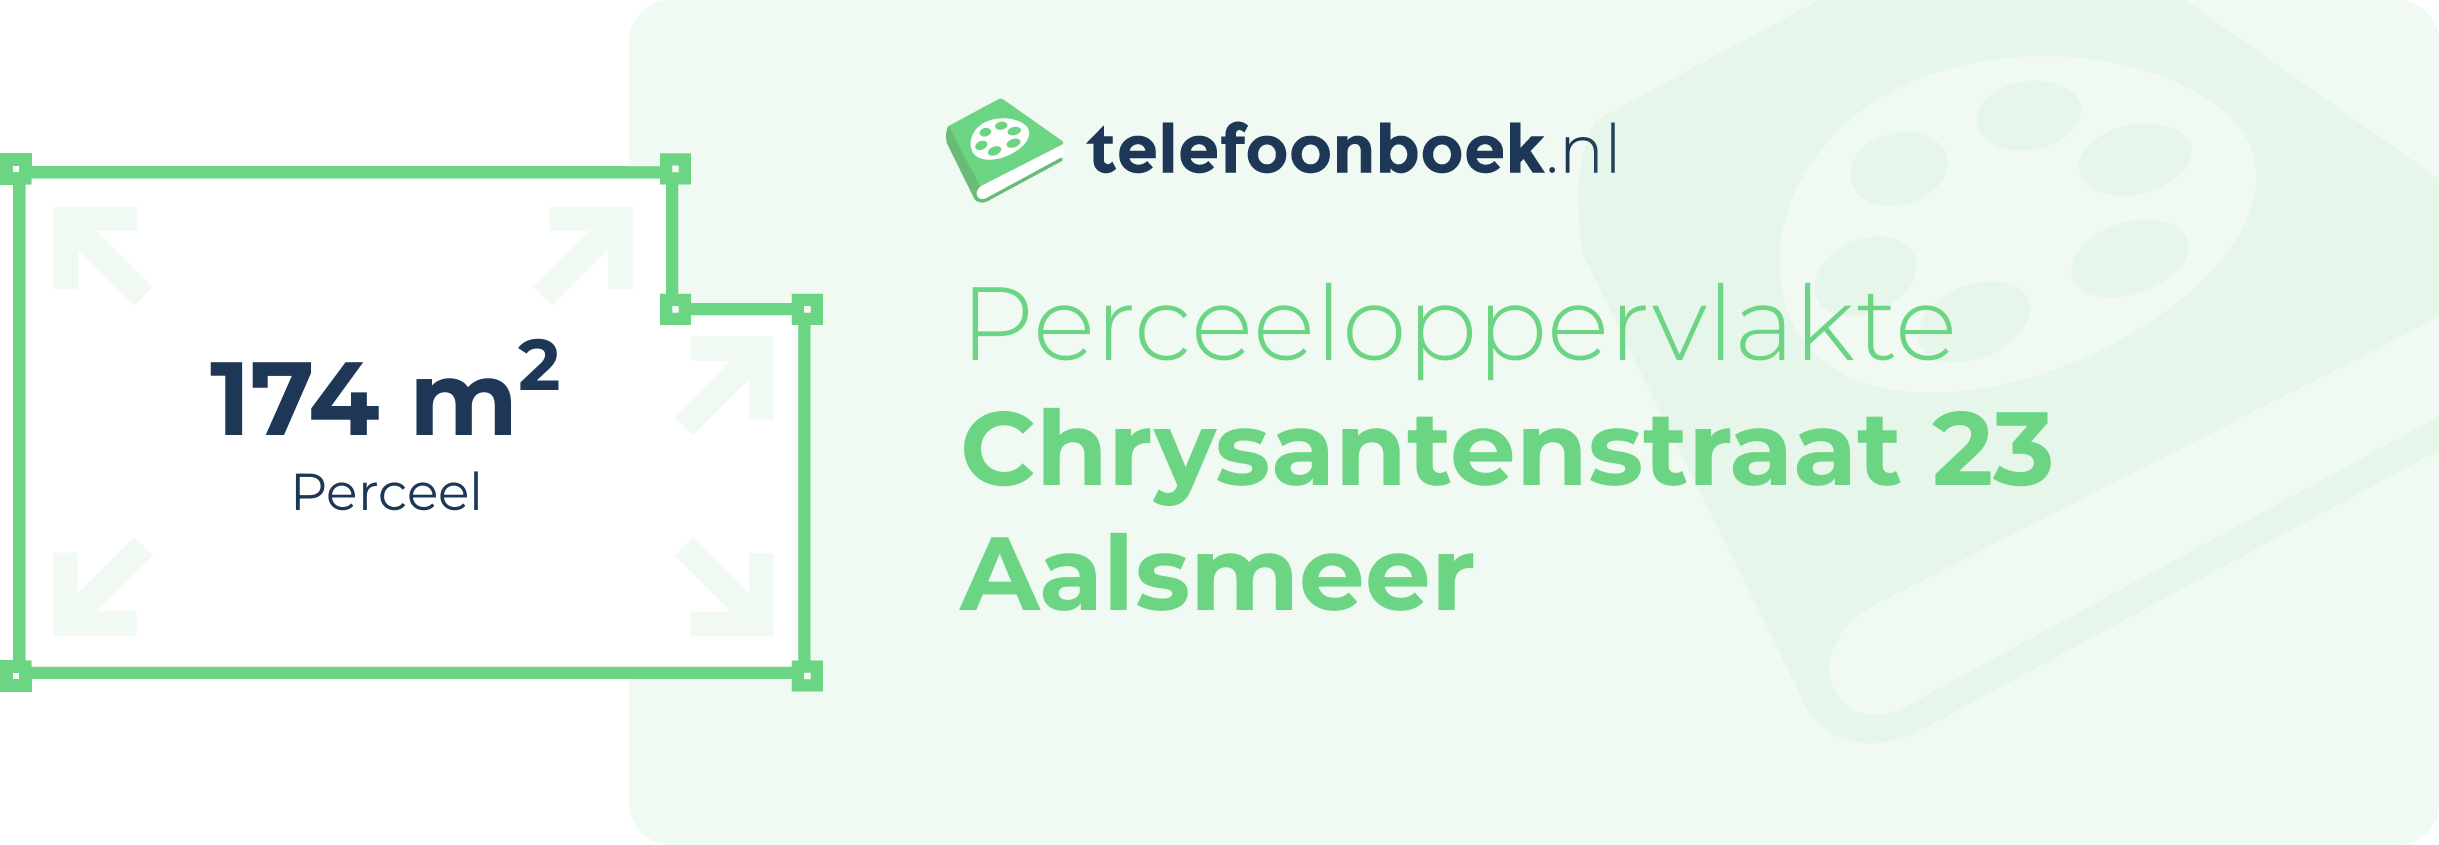 Perceeloppervlakte Chrysantenstraat 23 Aalsmeer